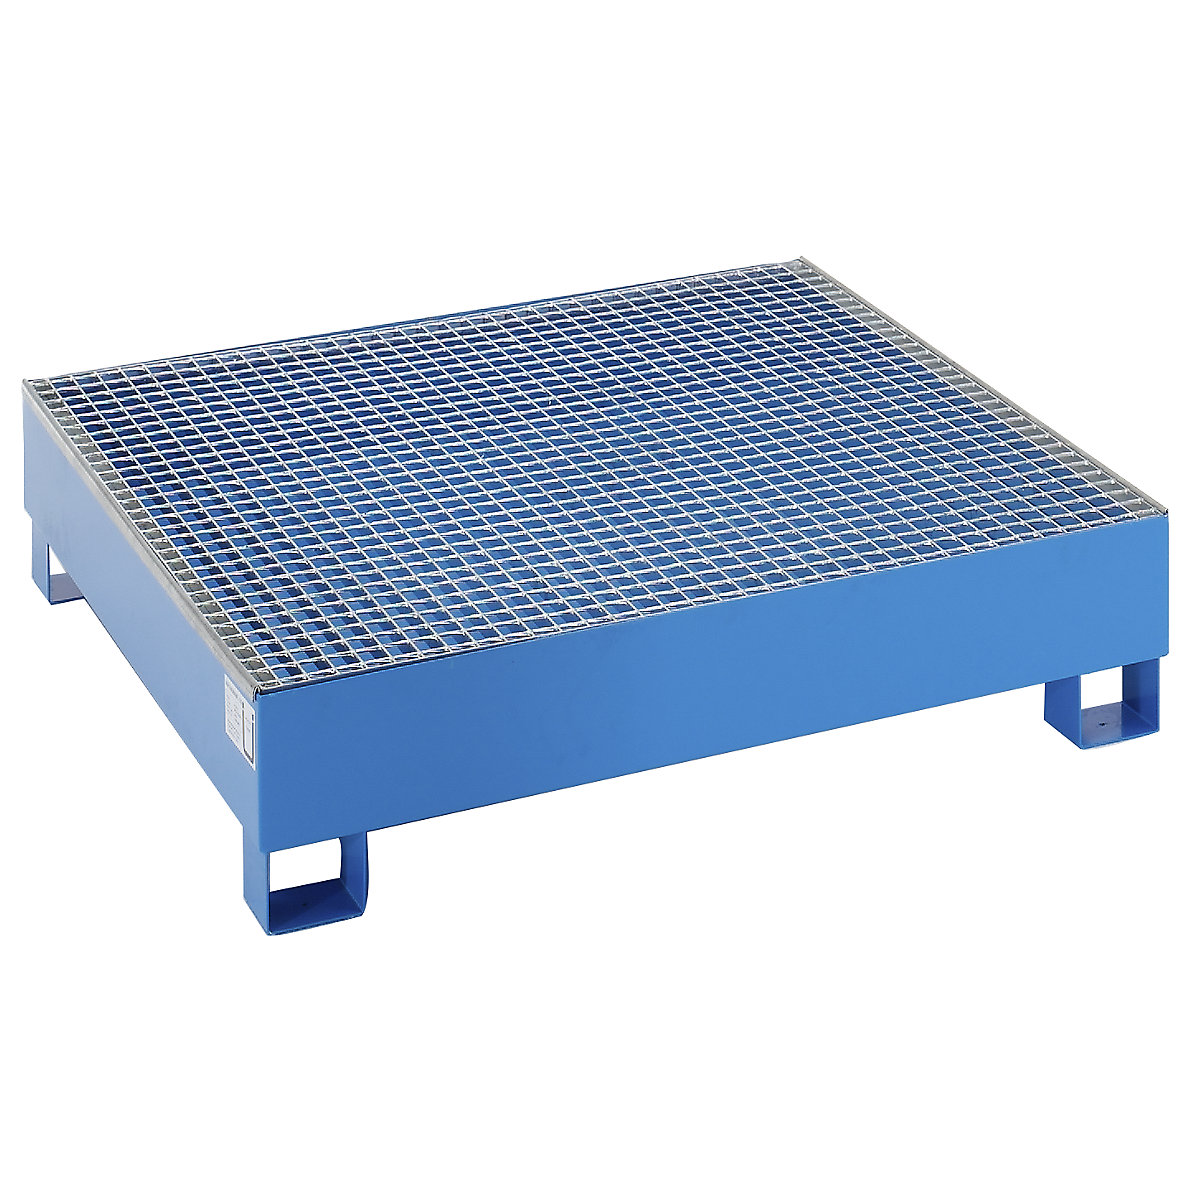 EUROKRAFTbasic Stahl-Auffangwanne für 200-l-Fässer, LxBxH 1200 x 1200 x 285 mm, ohne Zulassung, blau pulverbeschichtet, mit Gitterrost